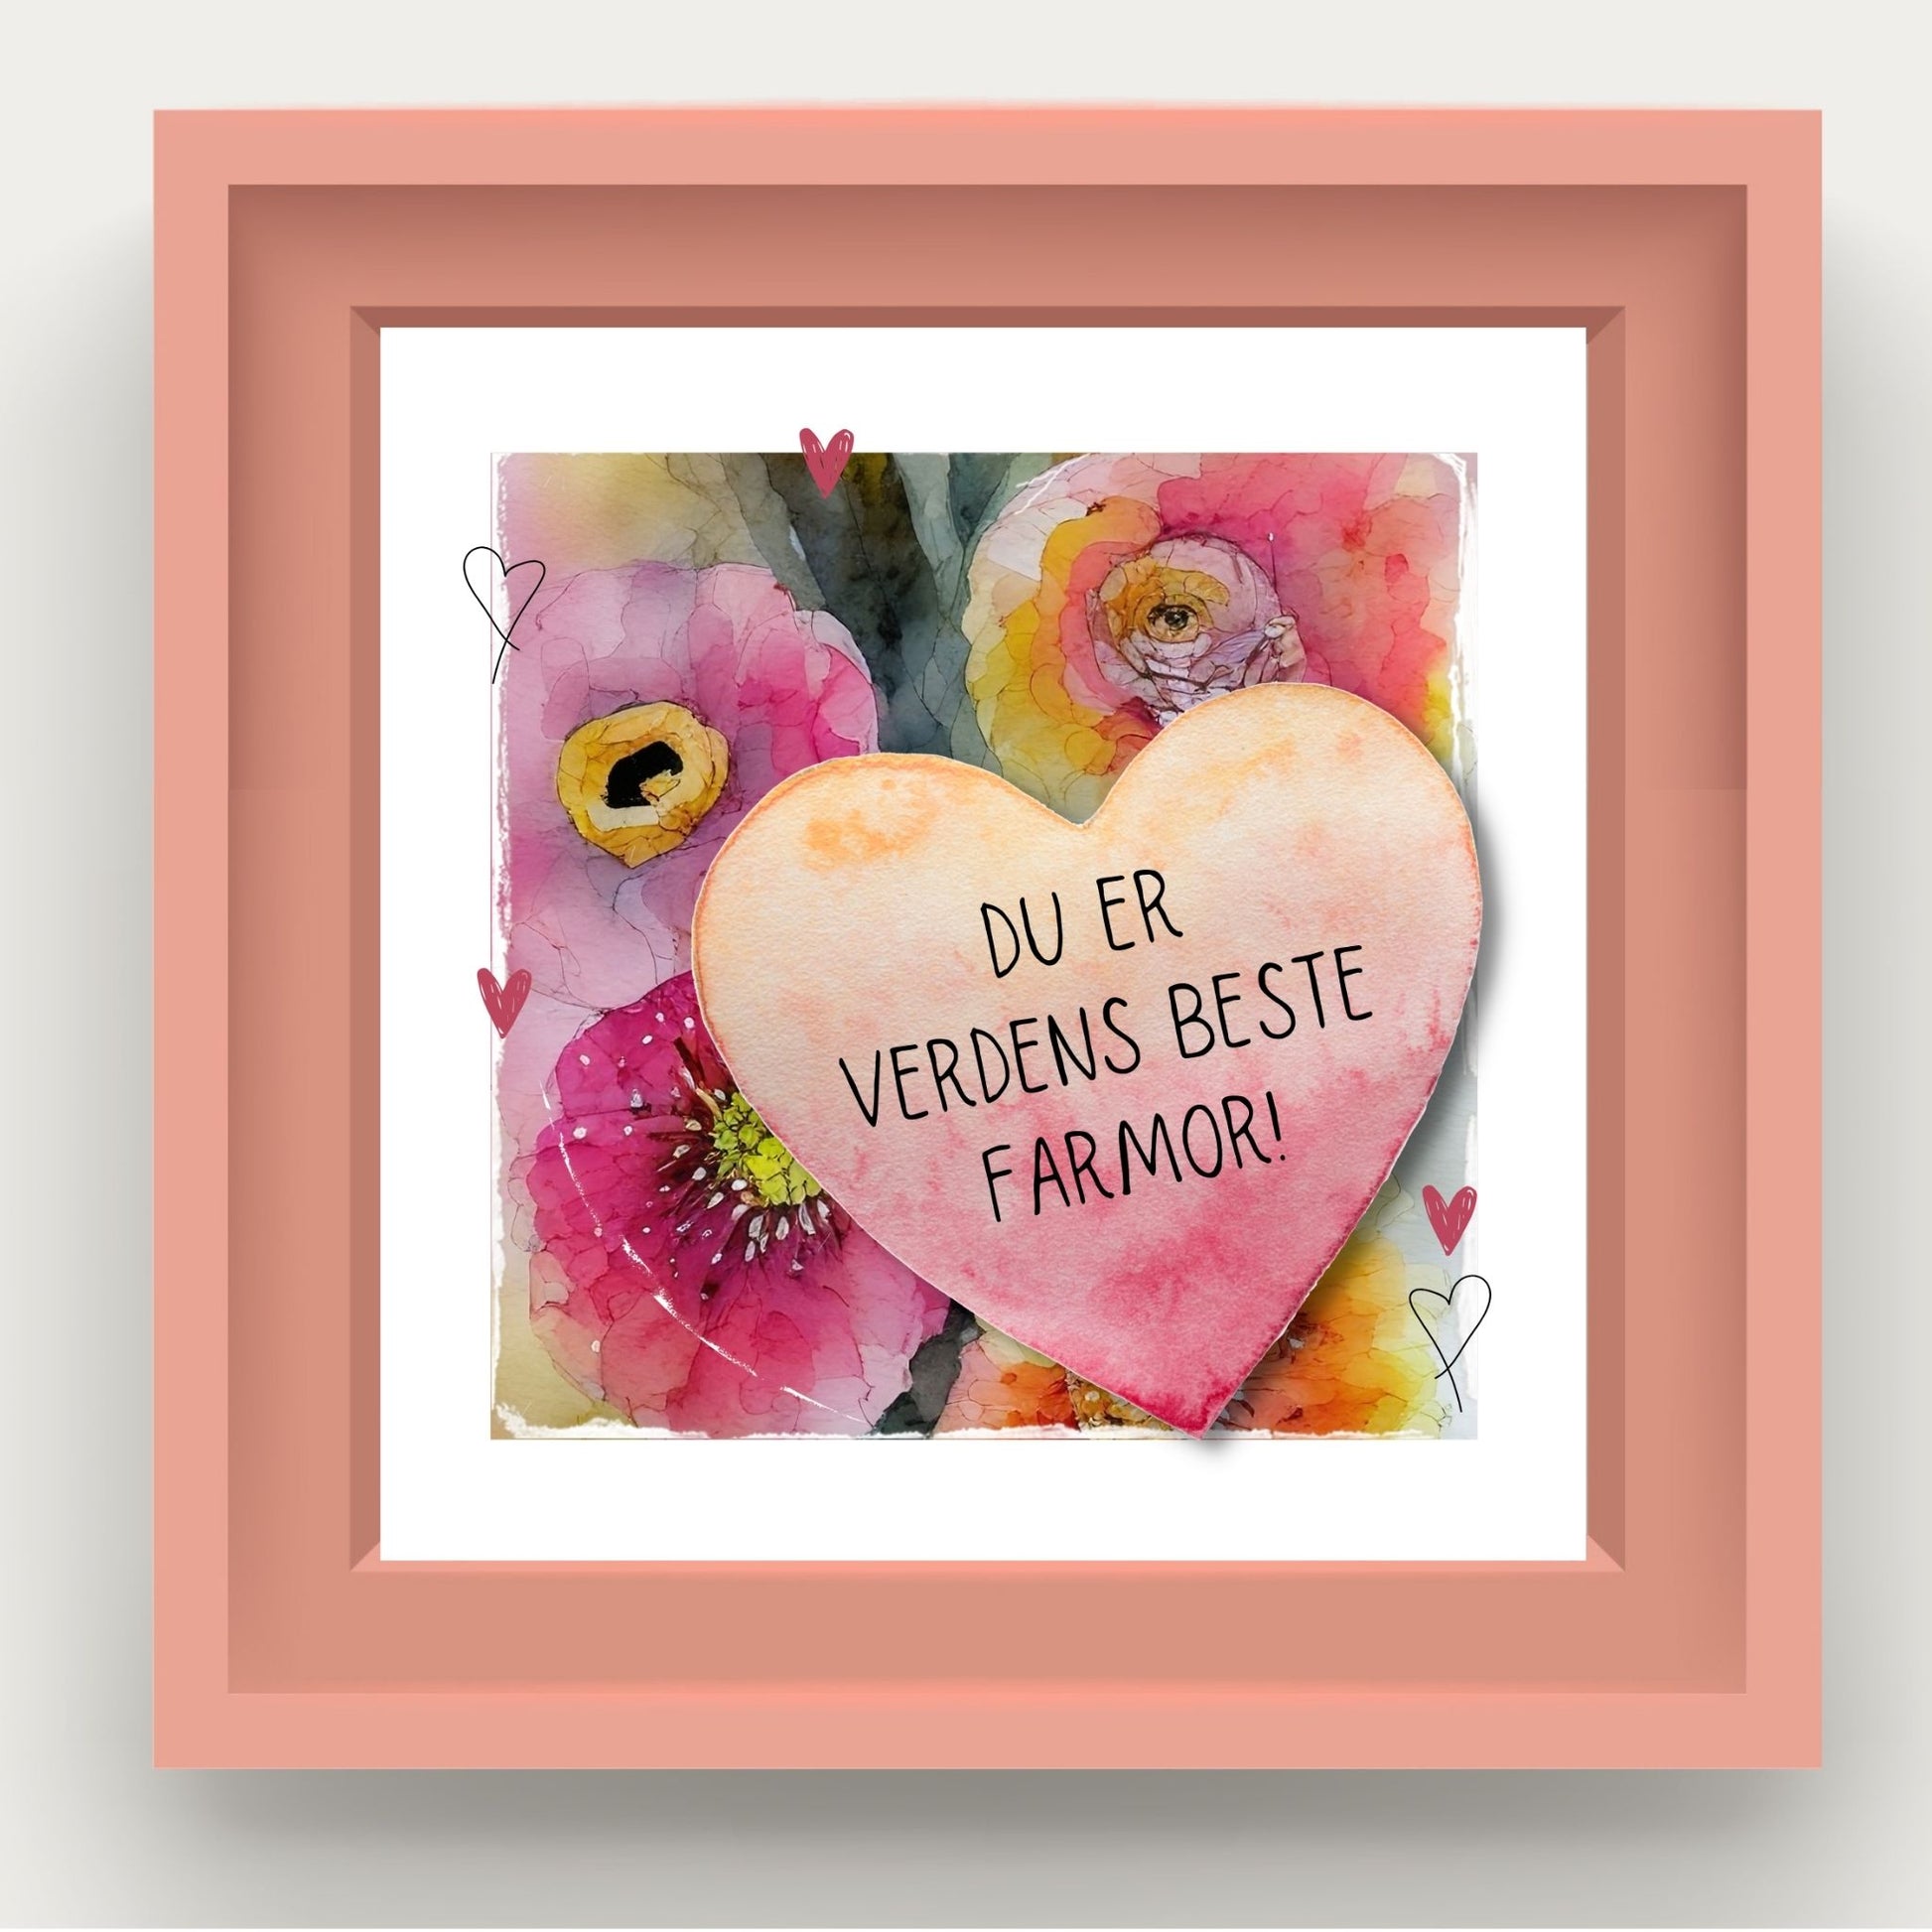 Grafisk plakat med et rosa hjerte påført tekst "Du er verdens beste farmor". Bagrunn i cerise og guloransje blomster. Illustrasjon som viser kortet i rosa ramme.